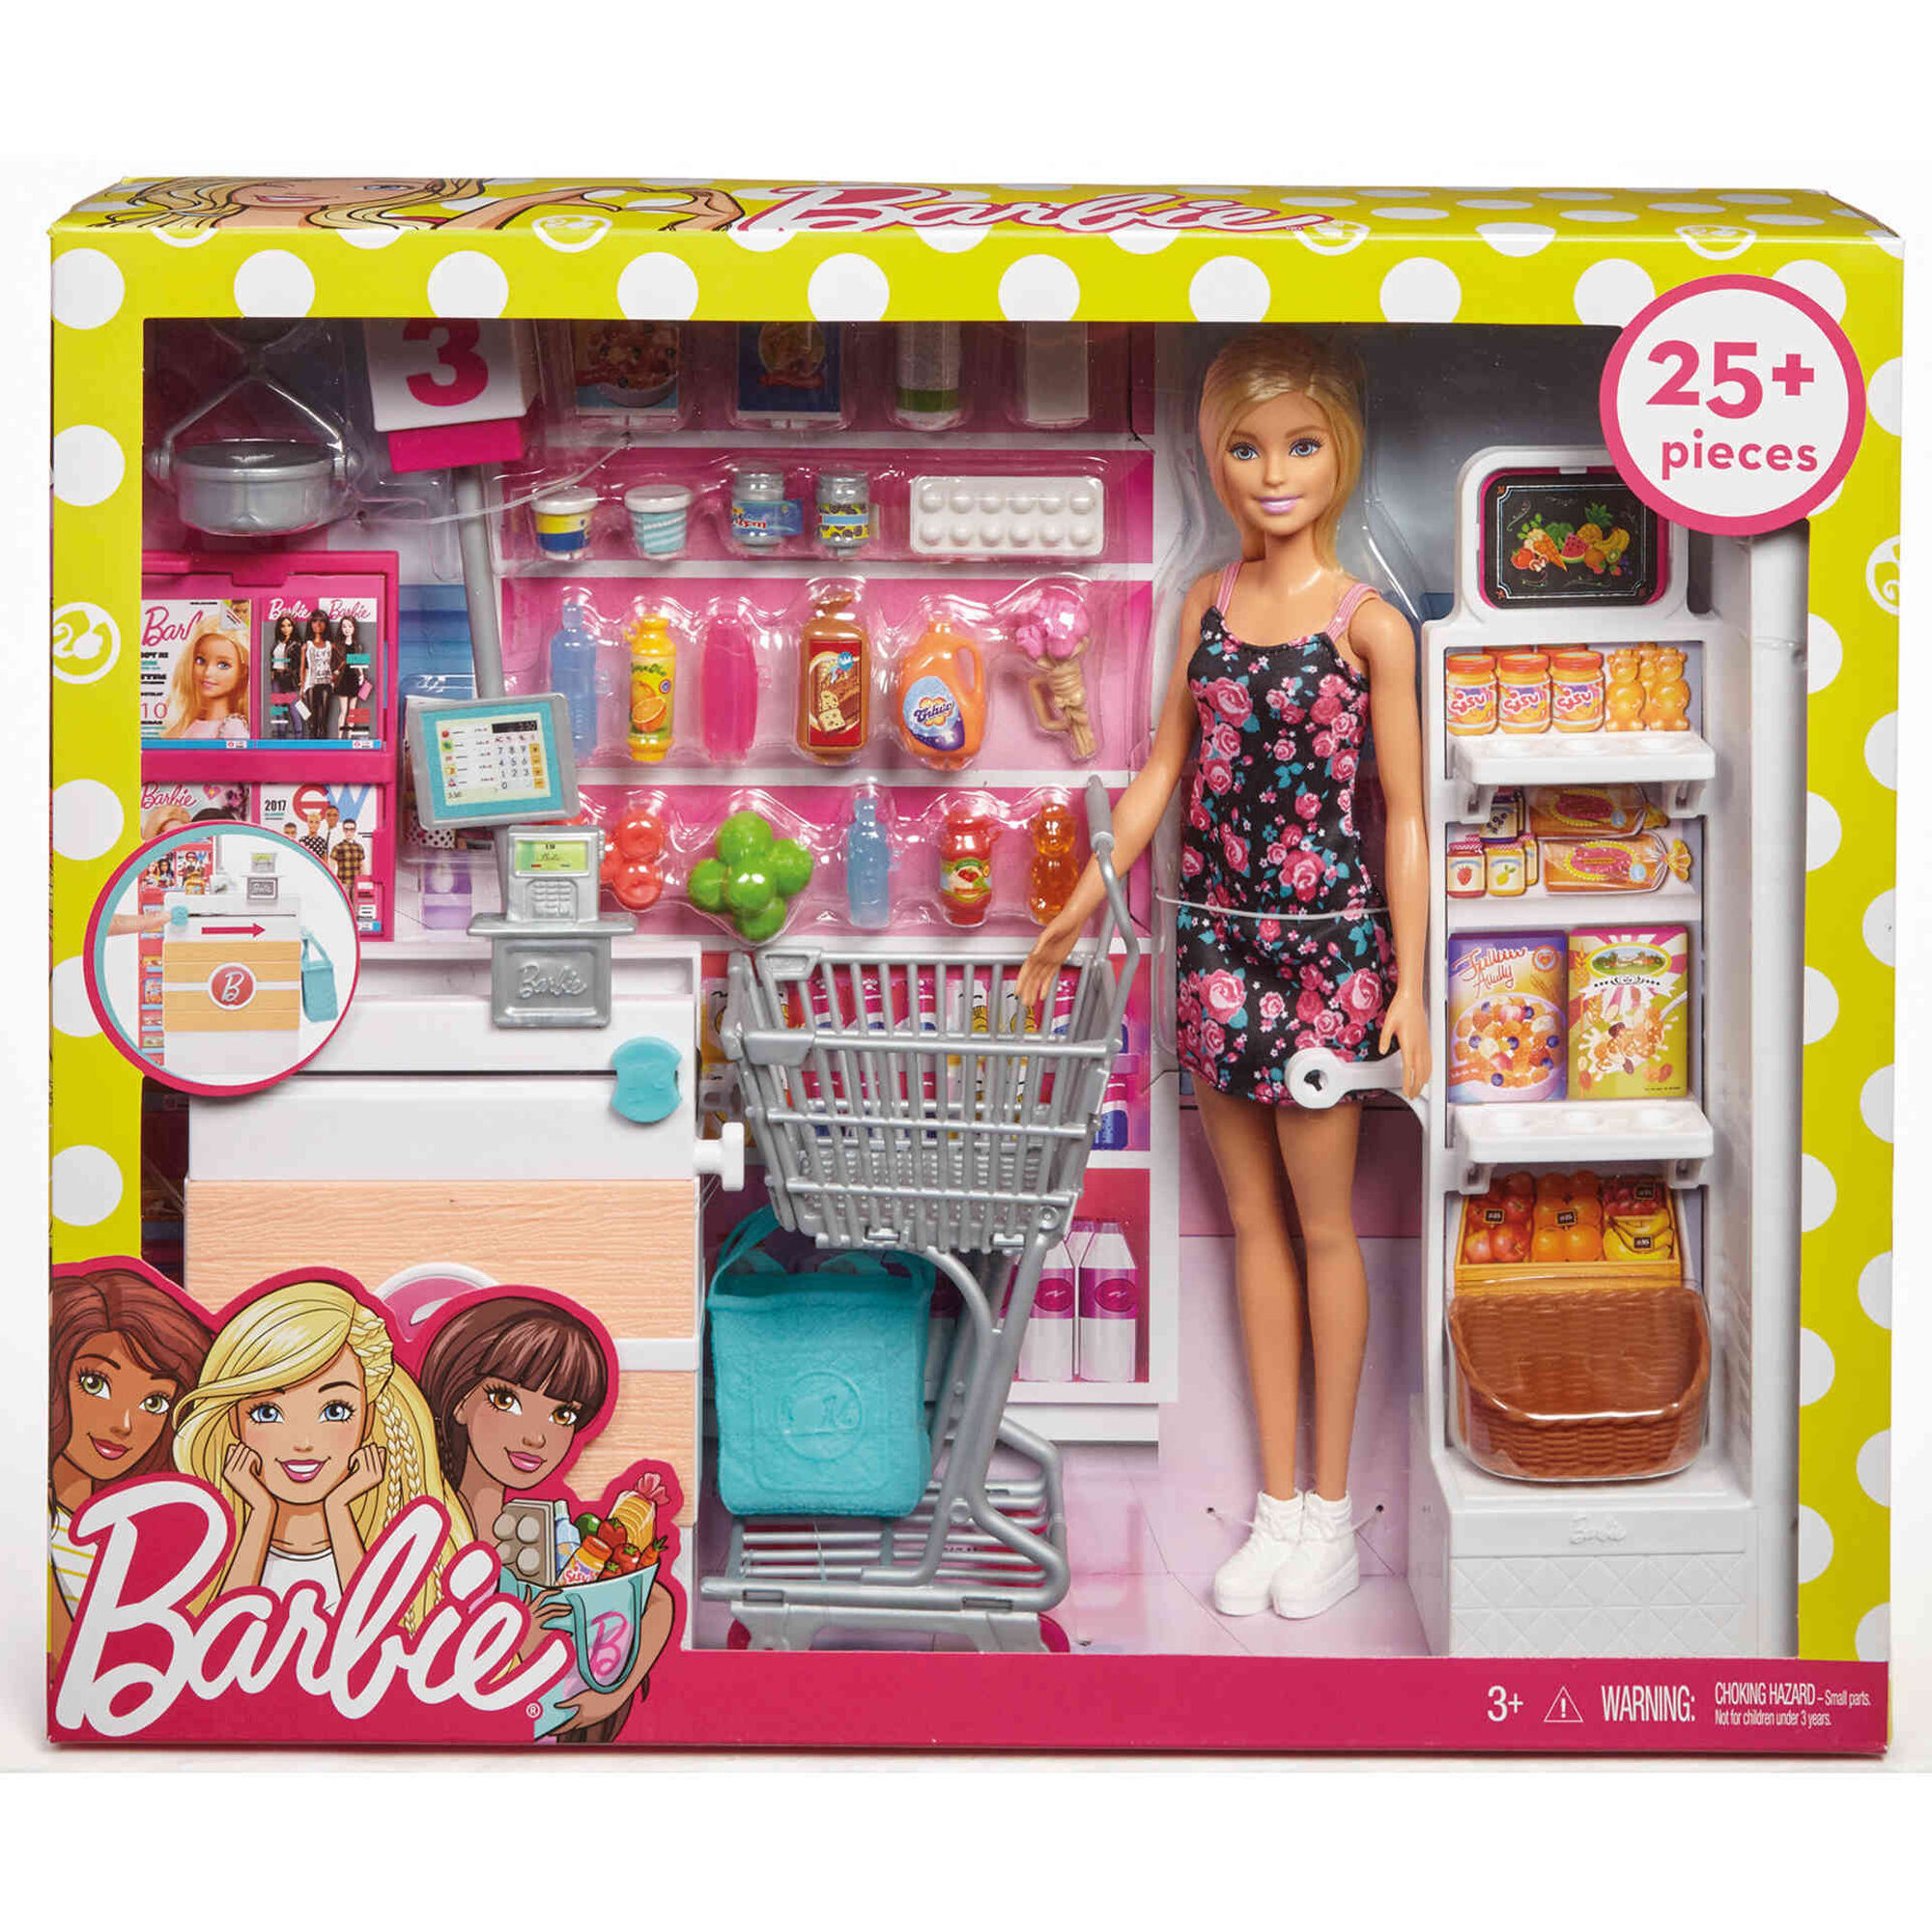 Игра купить куклу. Набор Barbie в супермаркете, 28 см, frp01. Набор Barbie frp01 супермаркет. Куклы Барби плейсет. Кукла Барби Mattel супермаркет.